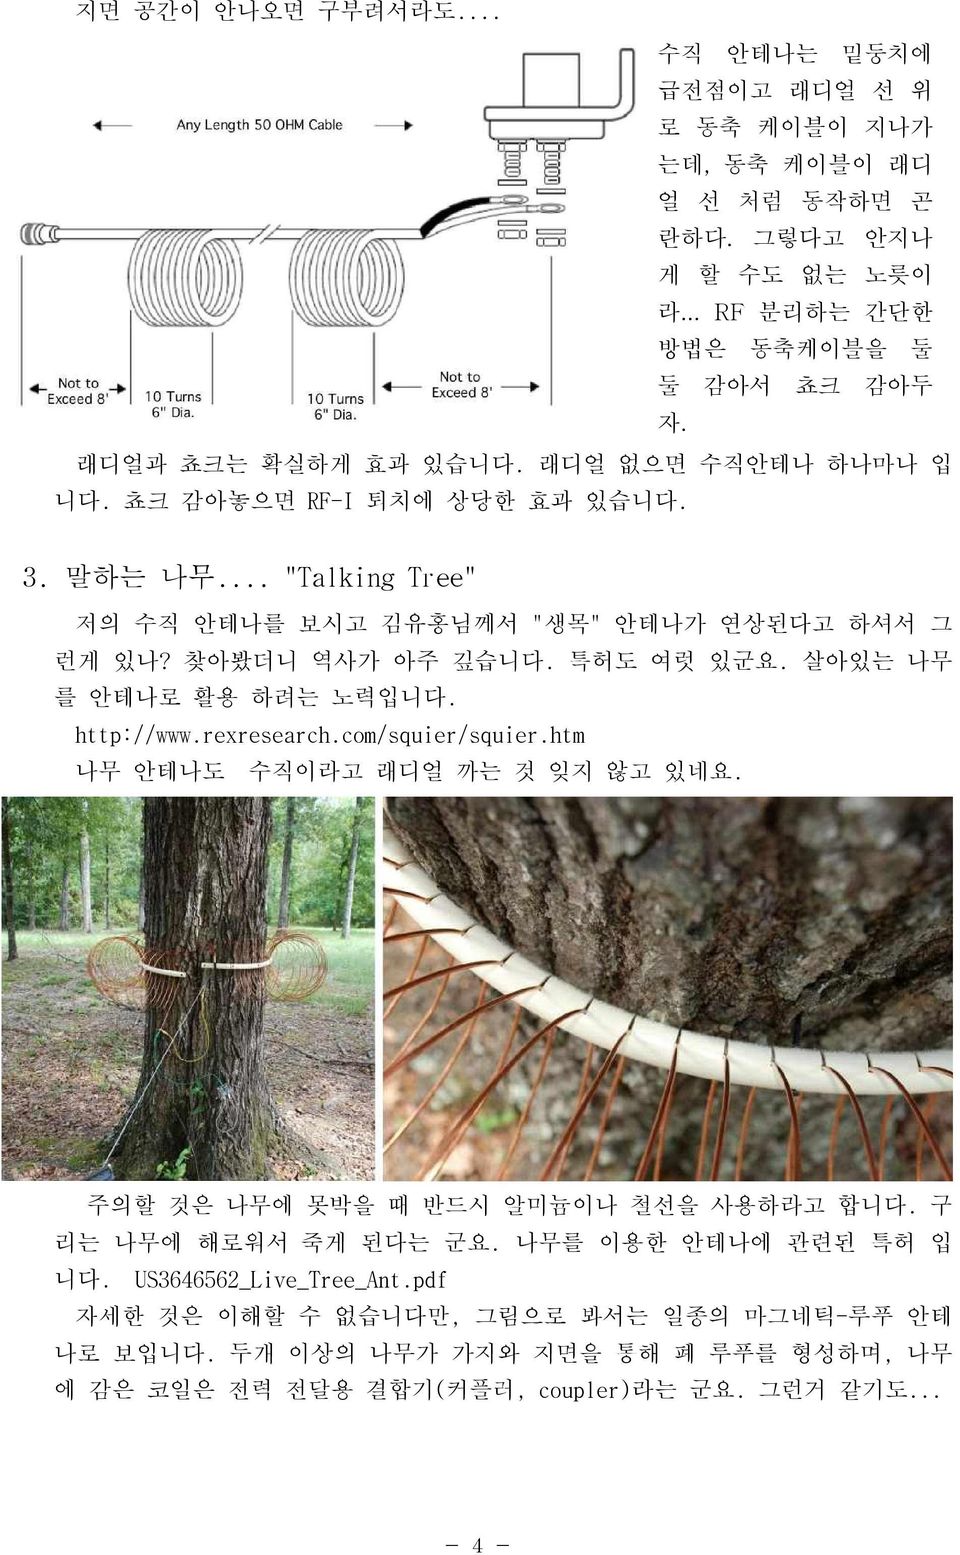 특허도 여럿 있군요. 살아있는 나무 를 안테나로 활용 하려는 노력입니다. http://www.rexresearch.com/squier/squier.htm 나무 안테나도 수직이라고 래디얼 까는 것 잊지 않고 있네요. 주의할 것은 나무에 못박을 때 반드시 알미늄이나 철선을 사용하라고 합니다.